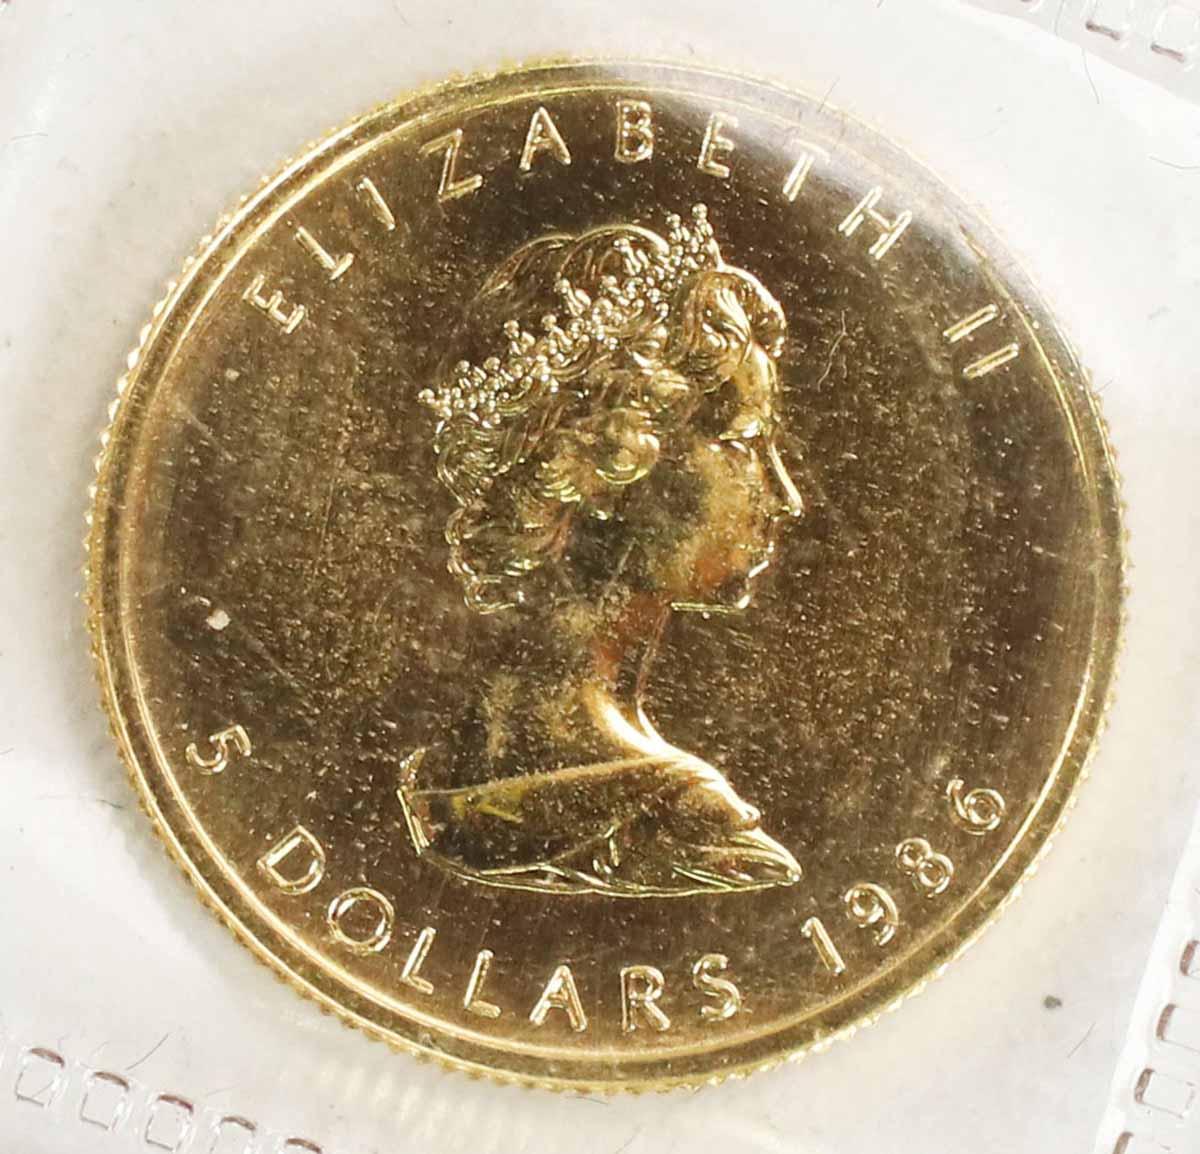 1986 Canada 1/10 oz .999 Gold Maple Leaf/Elizabeth II $5 Coin